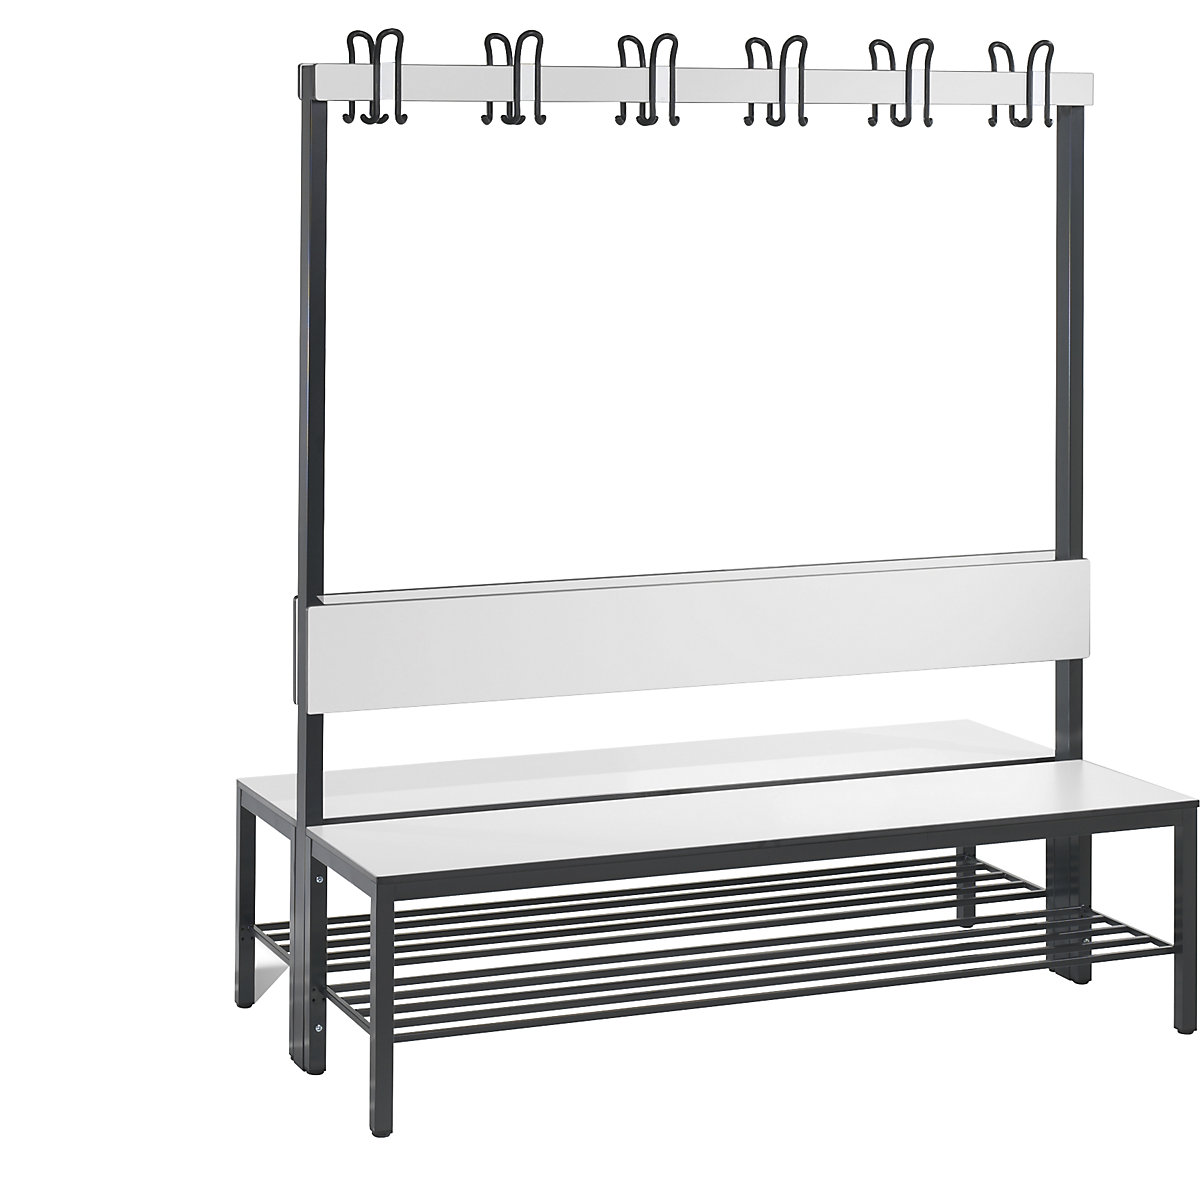 Šatňová lavica BASIC PLUS, dvojstranná – C+P, plocha sedadla HPL, lišta s háčikmi, s roštom na obuv, dĺžka 1500 mm, biela-8